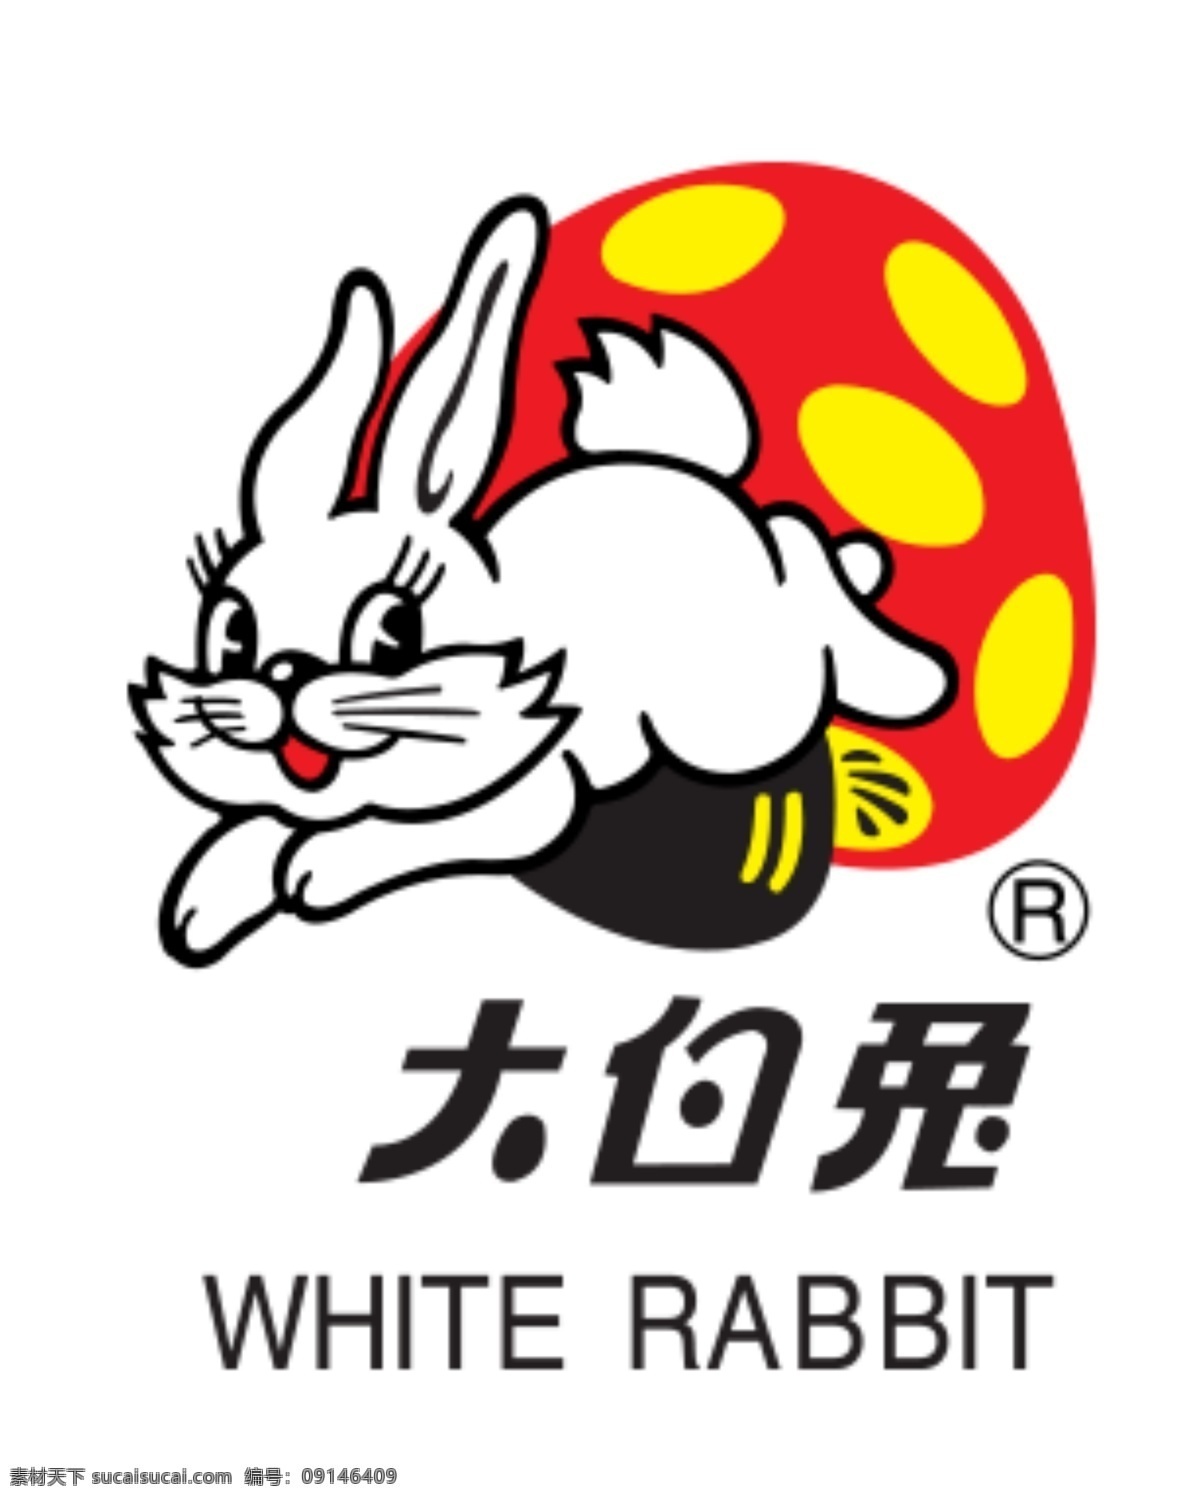 大 白兔 logo 矢量小白兔 矢量兔子 大白兔奶糖 大白兔矢量 矢量大白兔 大白兔标志 大白兔商标 大白兔标识 大白兔图标 奶糖品牌 糖果 卡通 少儿 幼儿 儿童 小白兔奶糖